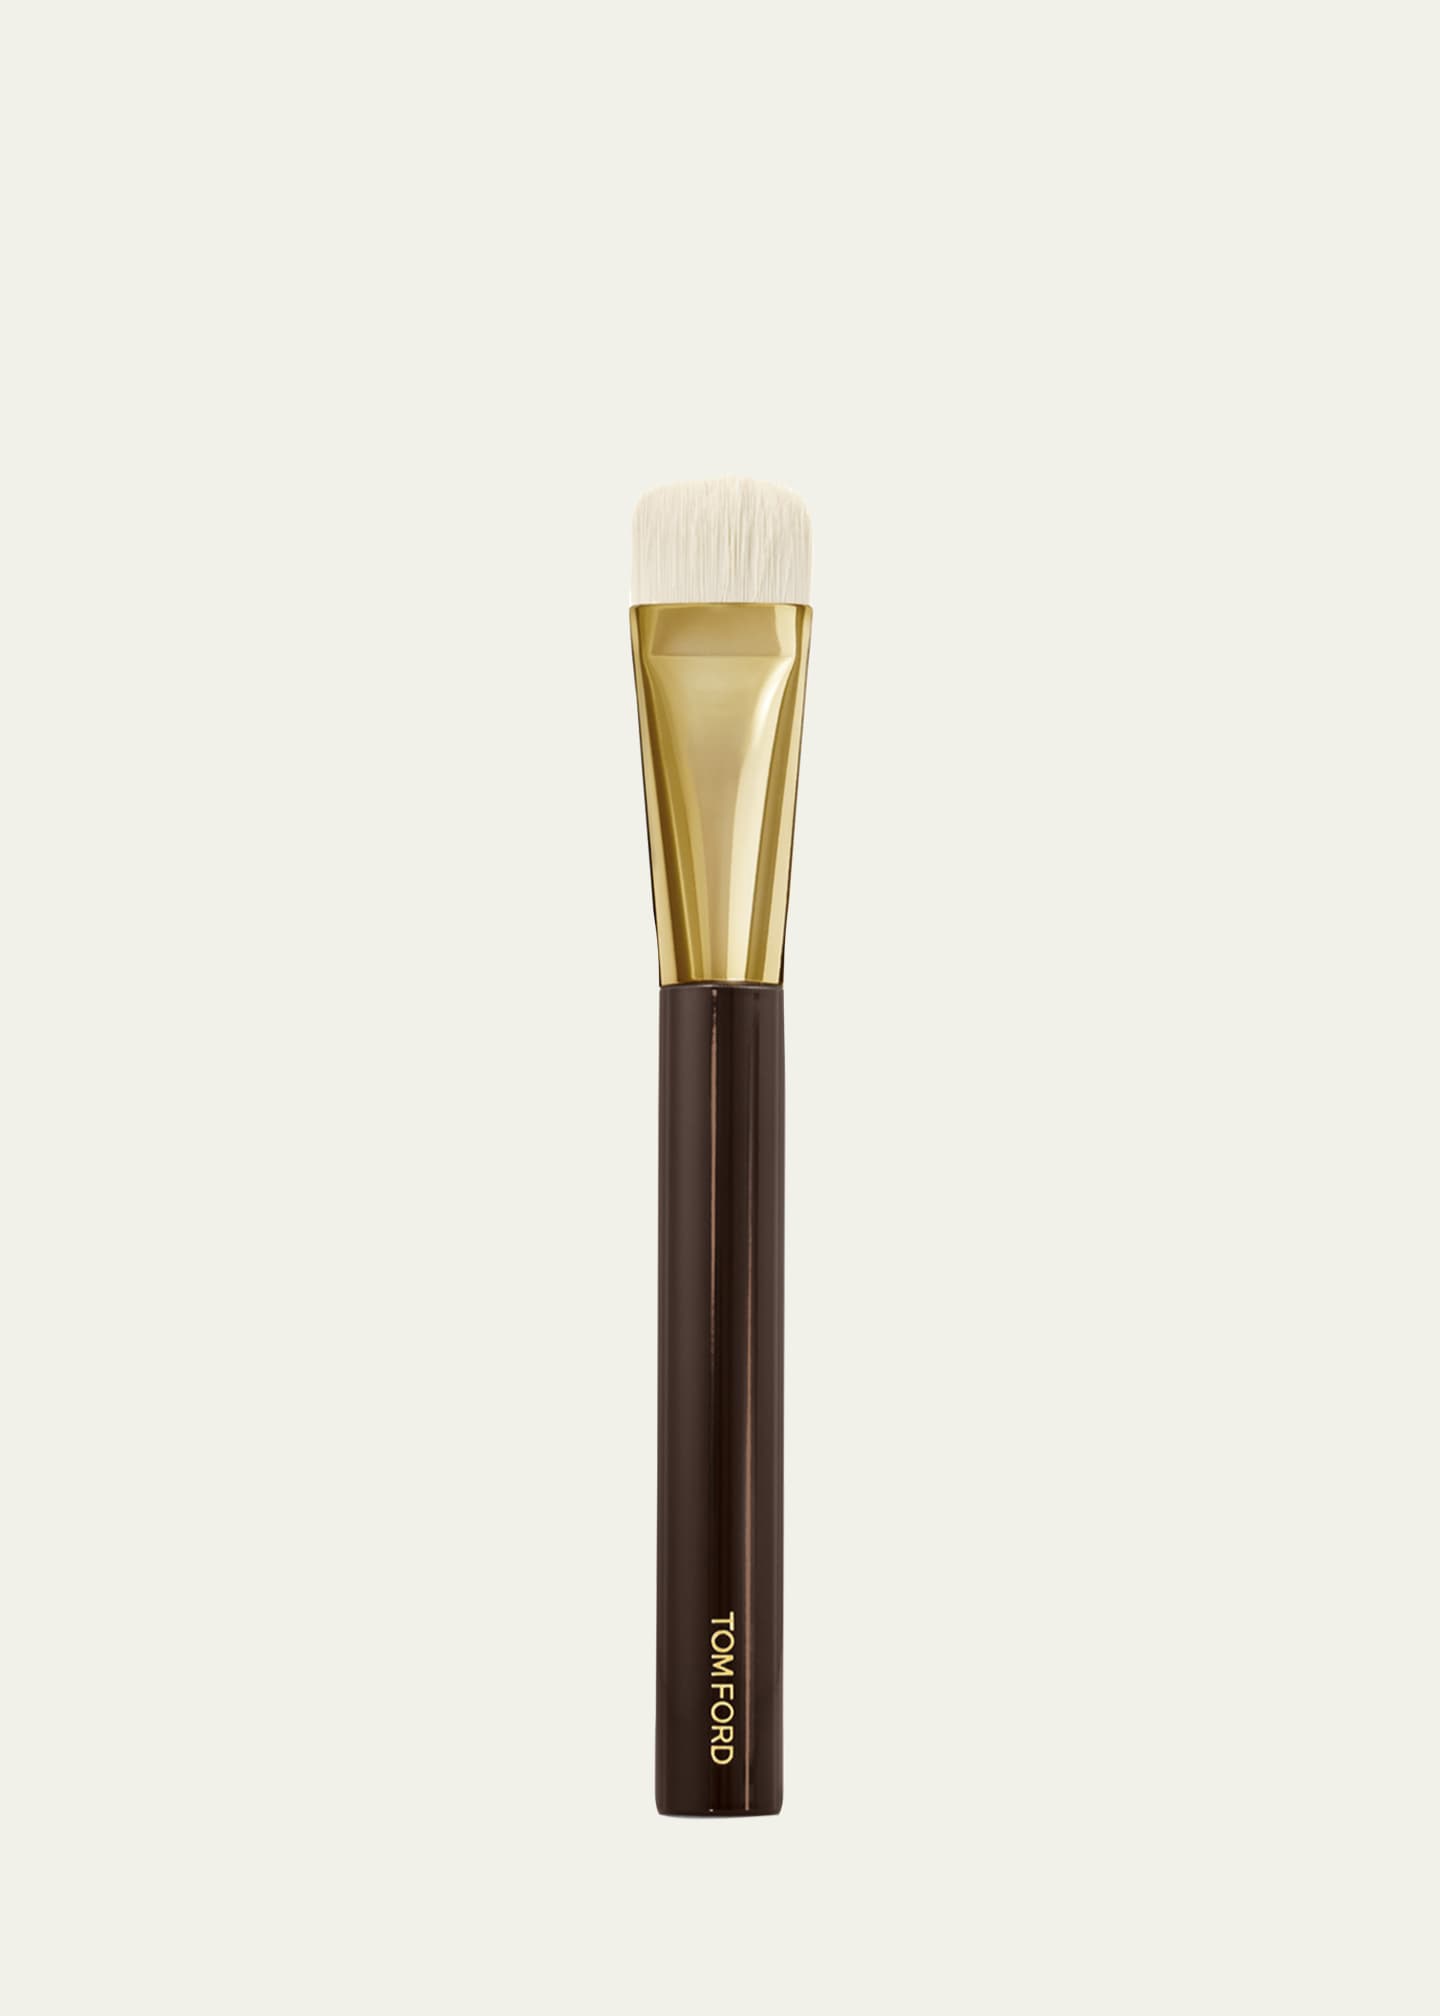 TOM FORD Shade & Illuminate Makeup Brush #04 - Bergdorf Goodman